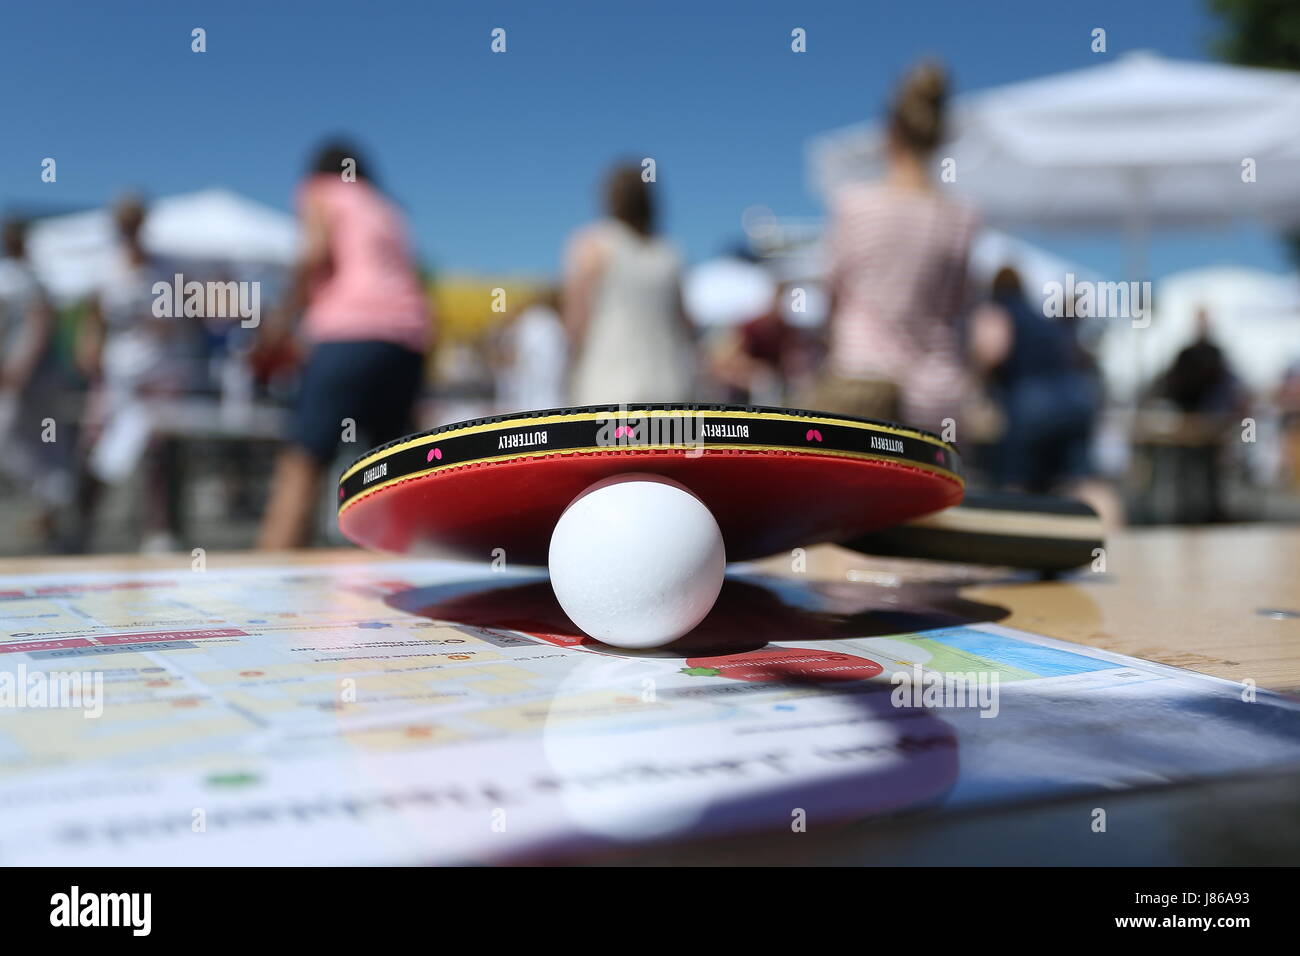 Düsseldorf, Allemagne. 27 mai, 2017. Une table de ping-pong et une balle de  tennis de table sur une table de la bière dans le quartier historique de  Düsseldorf, Allemagne, 27 mai 2017.